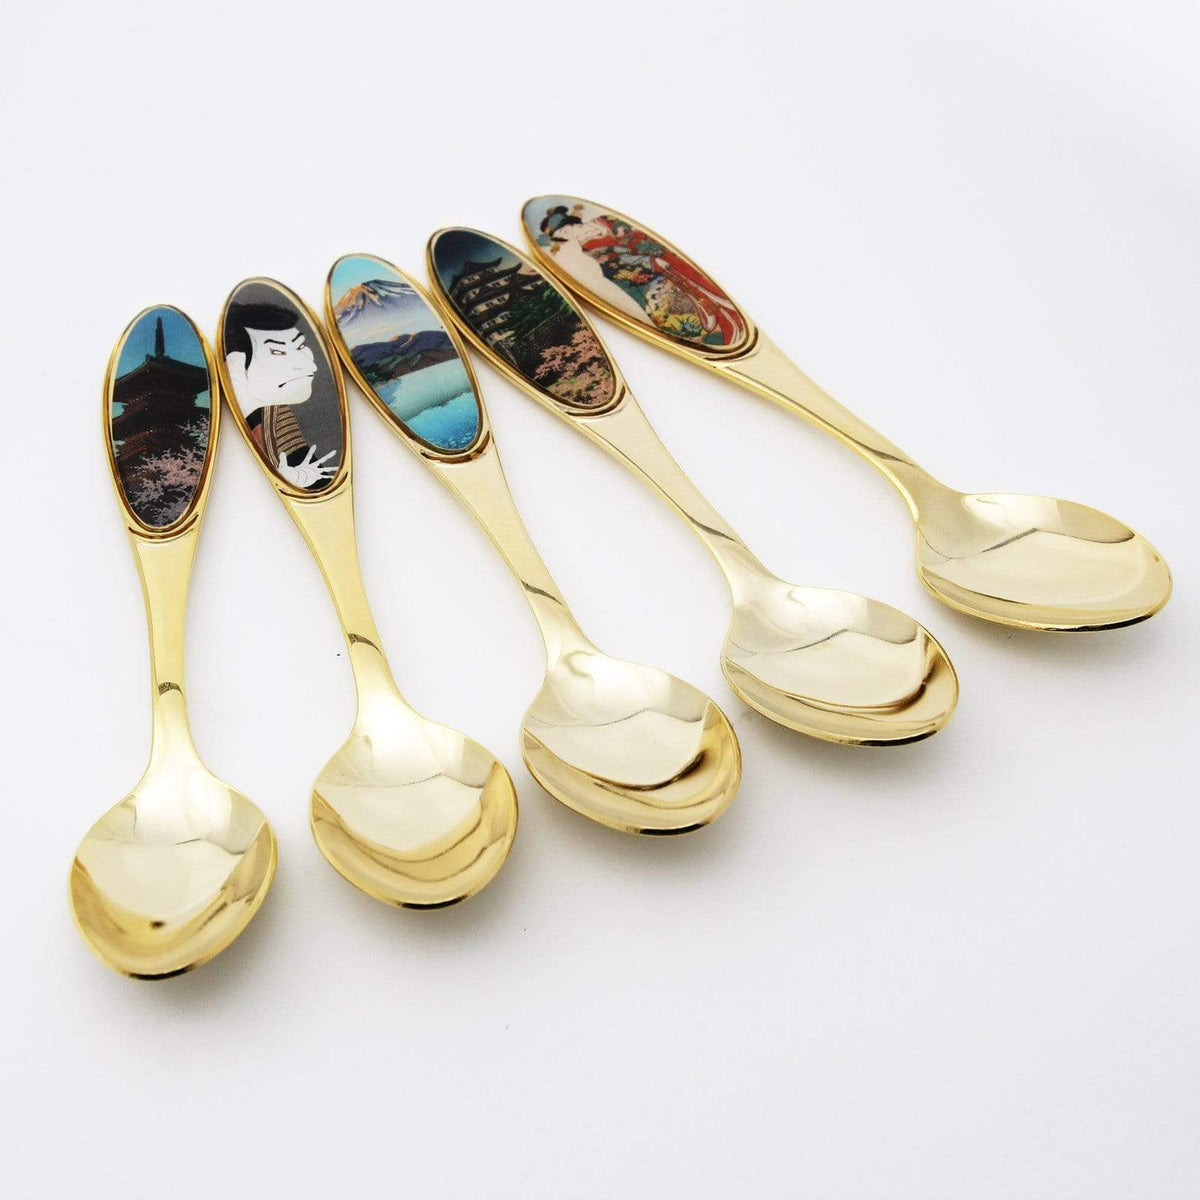 Asahi Ukiyo-e Cutlery Tea Spoons (5 Pieces) Cutlery Sets